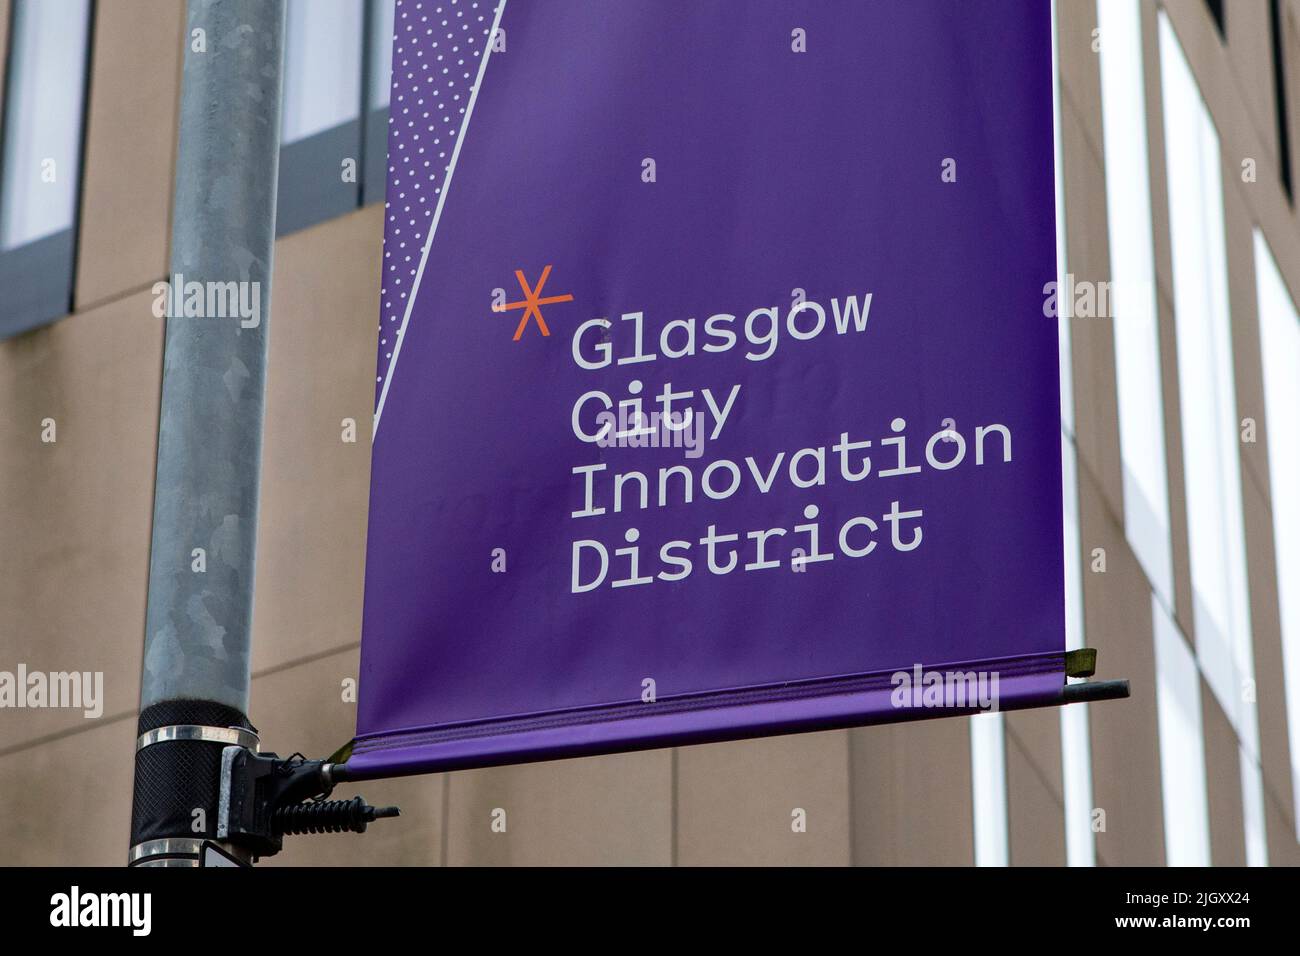 Glasgow, Escocia - Octubre 12th 2021: Glasgow City Innovation District firma en la ciudad de Glasgow, Escocia. Foto de stock